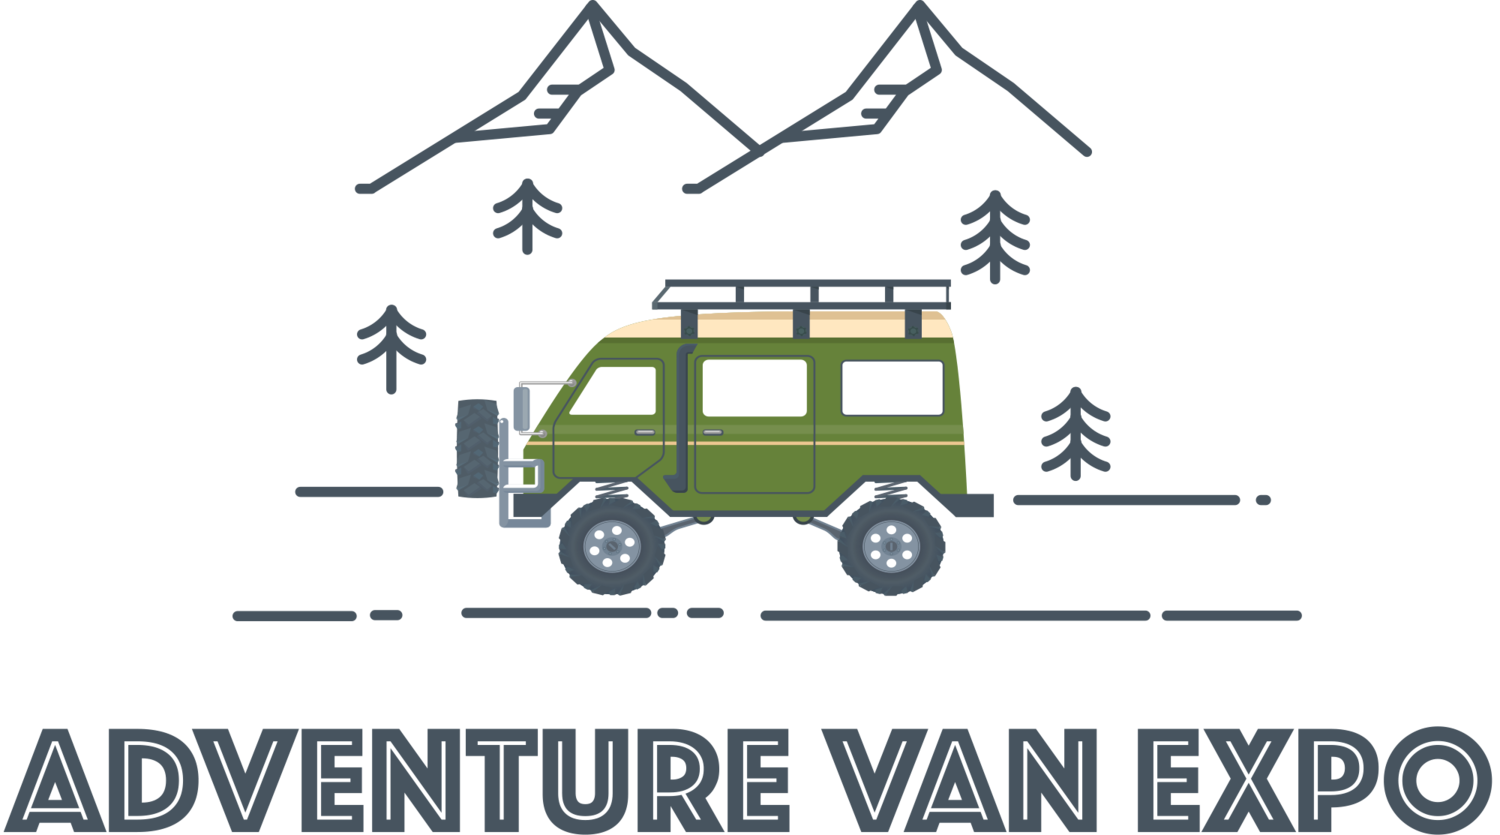 Adventure Van Expo - Lake Tahoe